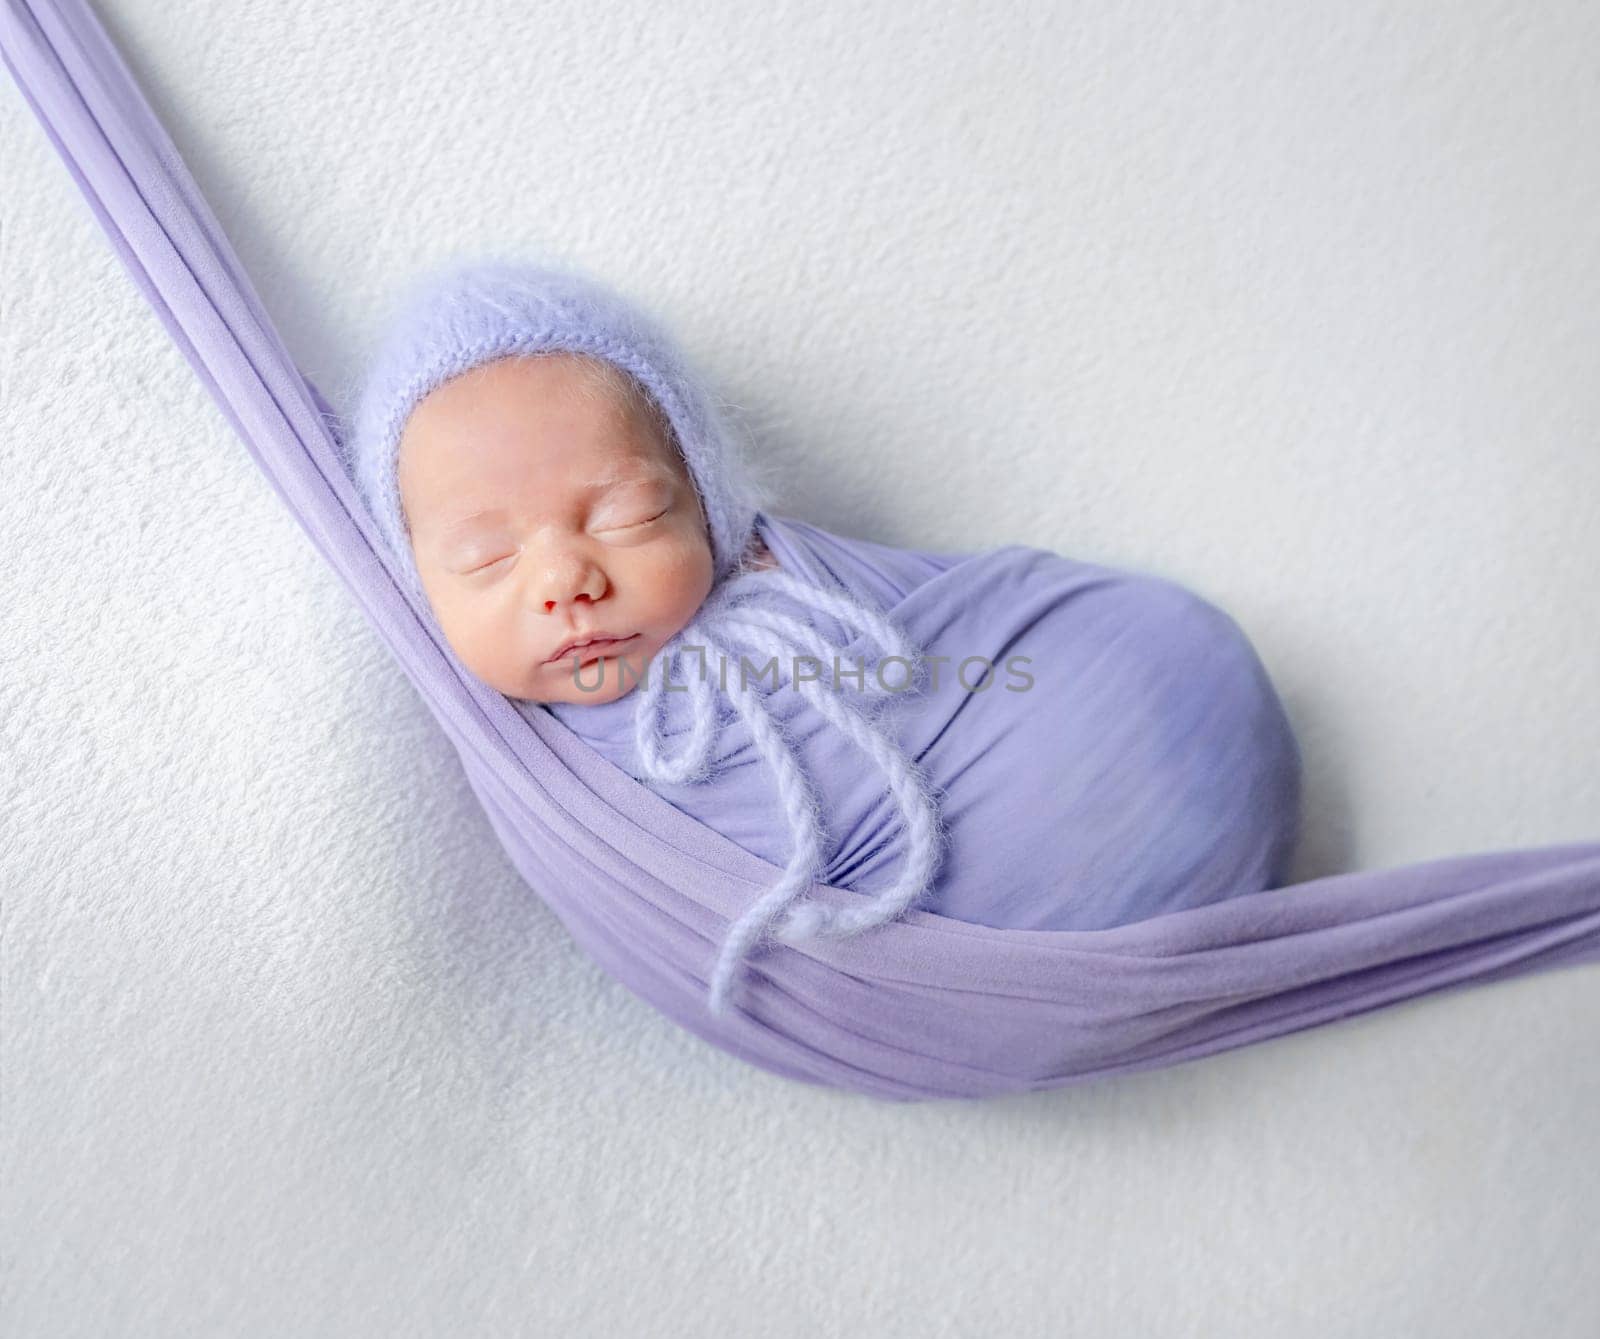 Newborn Baby In Lilac Wrap Sleeps In Hammock by tan4ikk1